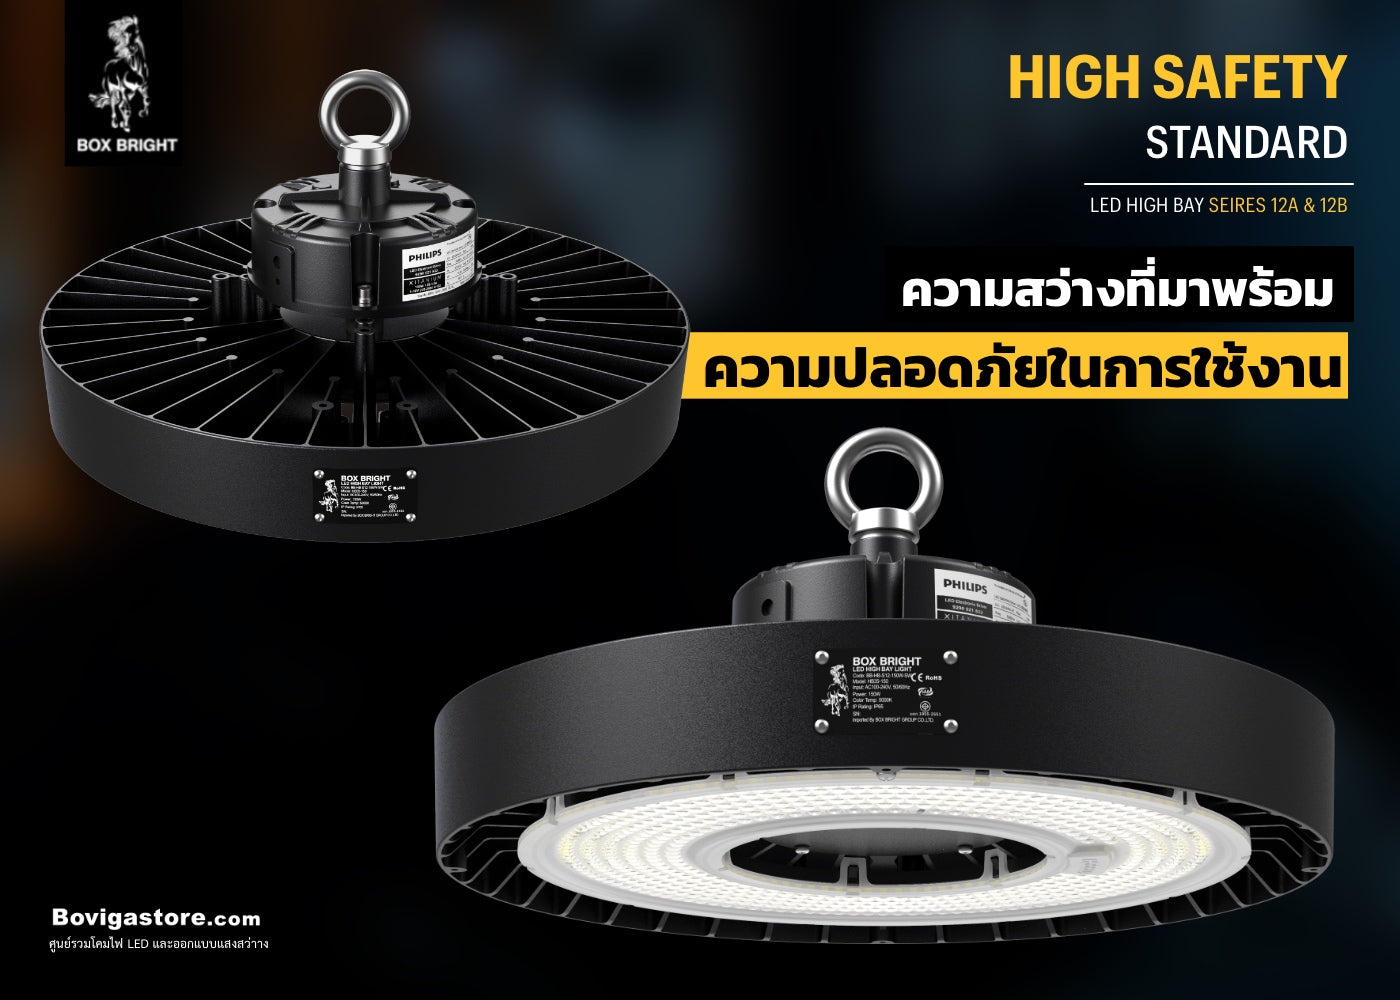 แสงสว่างที่ปลอดภัยสำหรับทุกการใช้งาน led high bay serise 12a แบรนด์ box bright